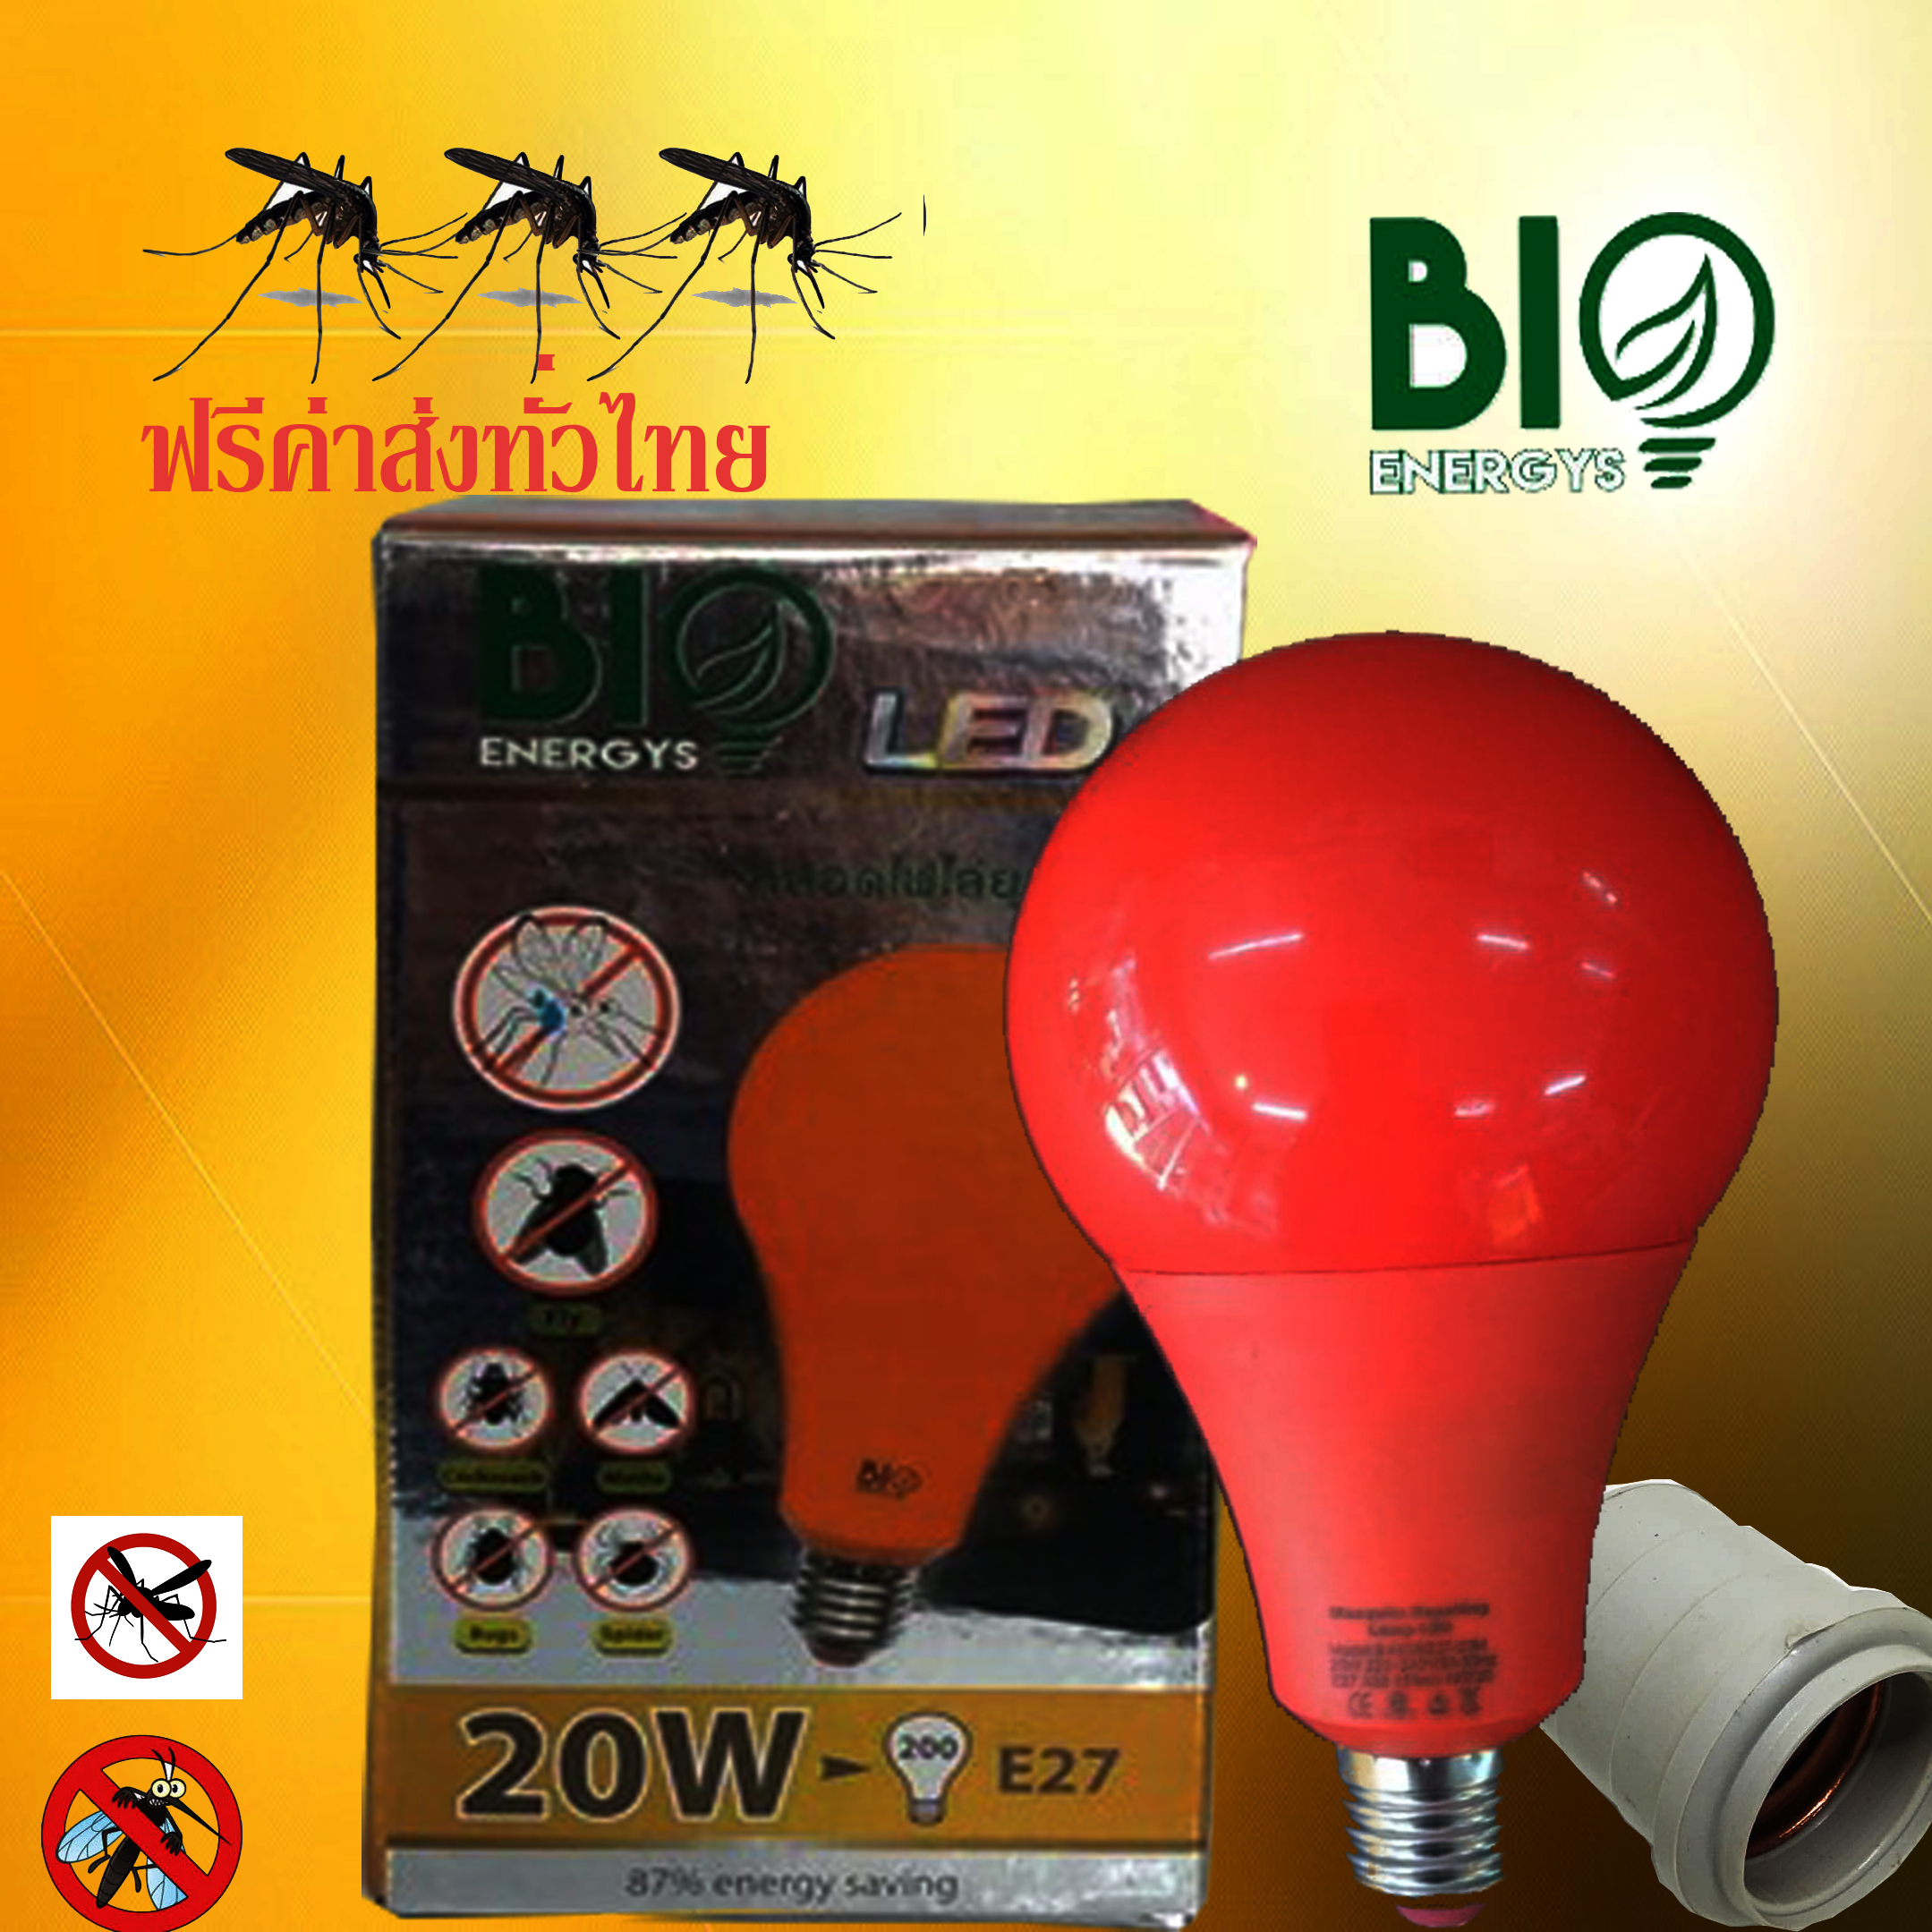 หลอดไฟไล่ยุง  และแมลงปีกอ่อน20W 220V พร้อมขั่วหลอดไฟ E27 ราคา60บาท1ชิ้น  Biobulb 220-240v 50-60 Hz